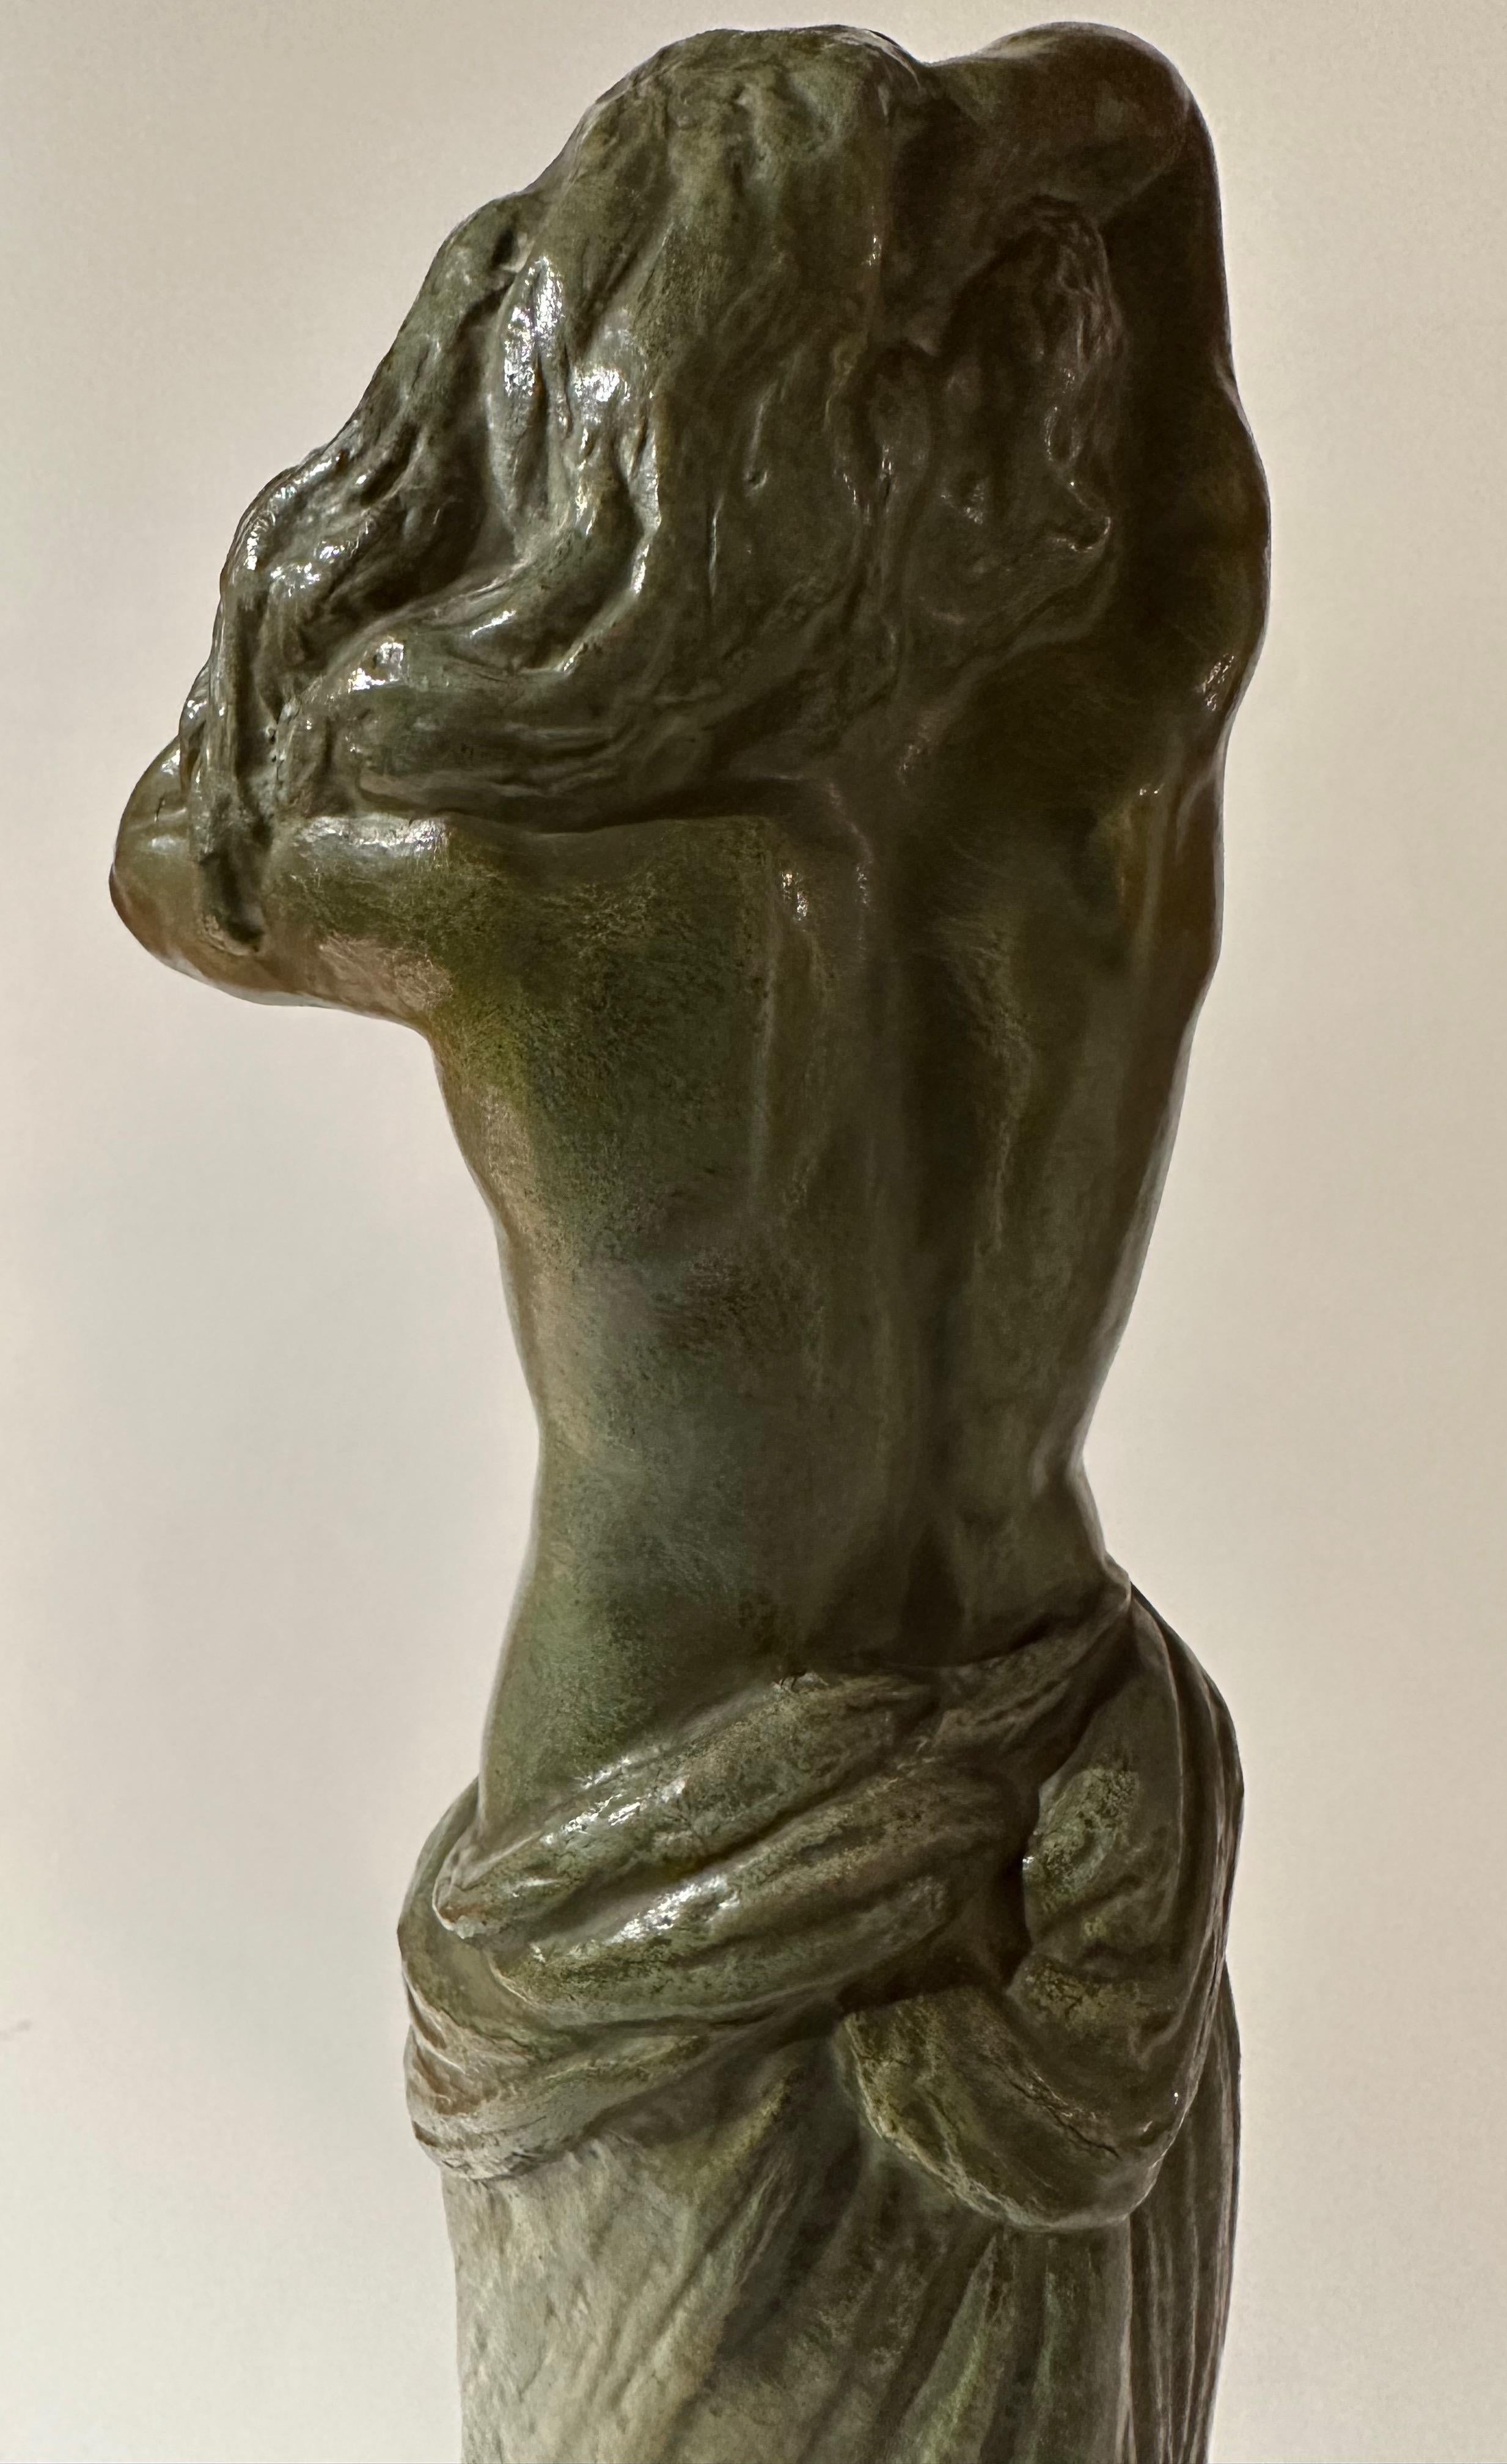 G Gori Bronze Weibliche drapierte nackte Statue Klassische Art Deco in Frankreich gemacht. Grün patinierte Bronzeskulptur, die eine barbusige Frau darstellt, die mit den Händen hinter dem Kopf auf einem Marmorsockel steht. 1925-1930 Stilisierte Pose